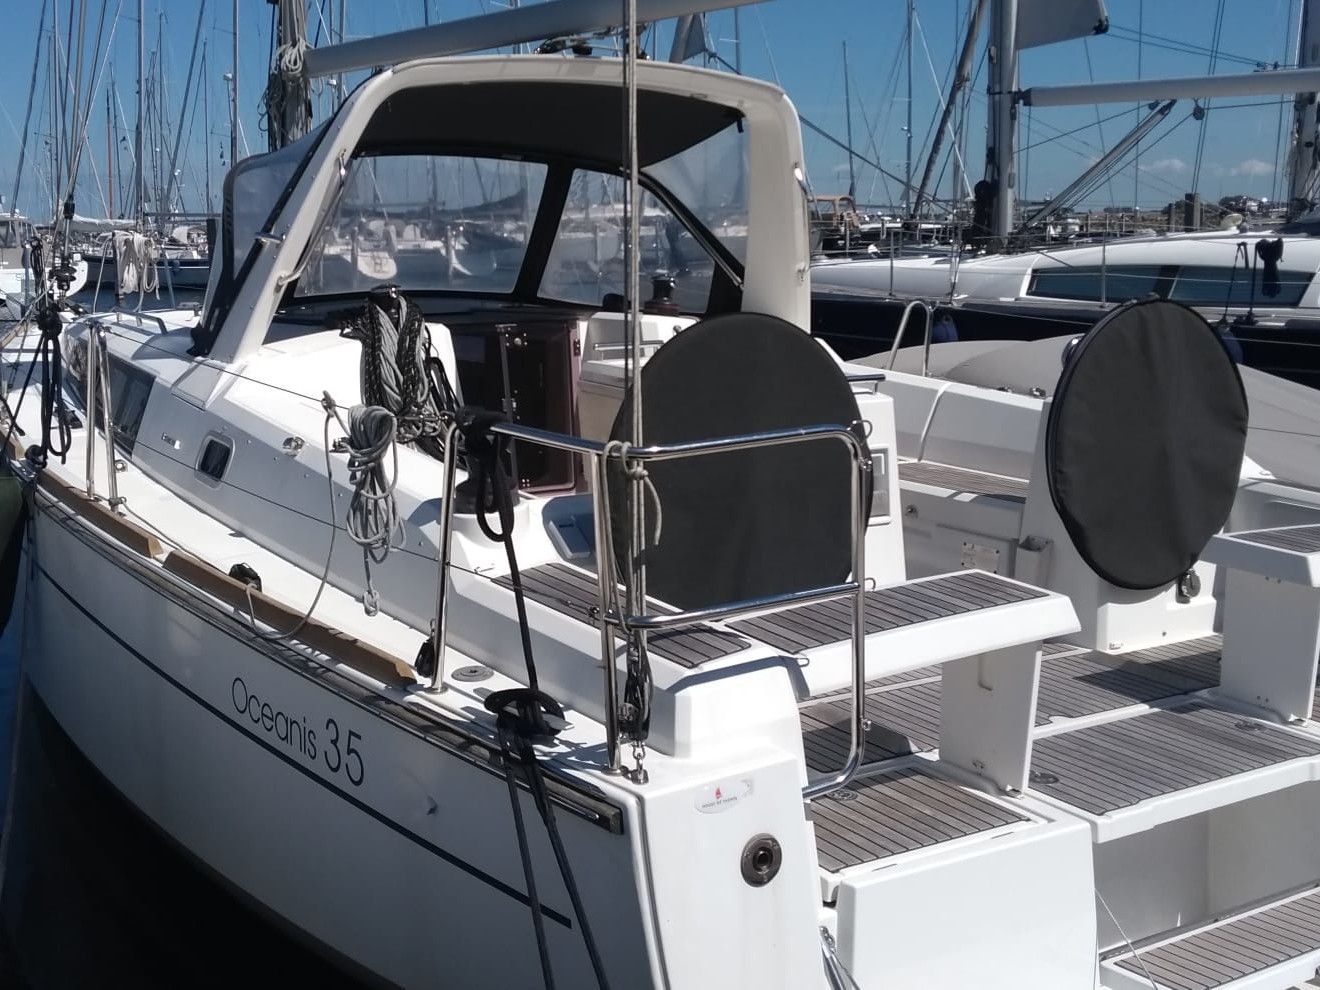 Oceanis 35 - Yacht Charter Yerseke & Boat hire in Netherlands Yerseke Yerseke 1